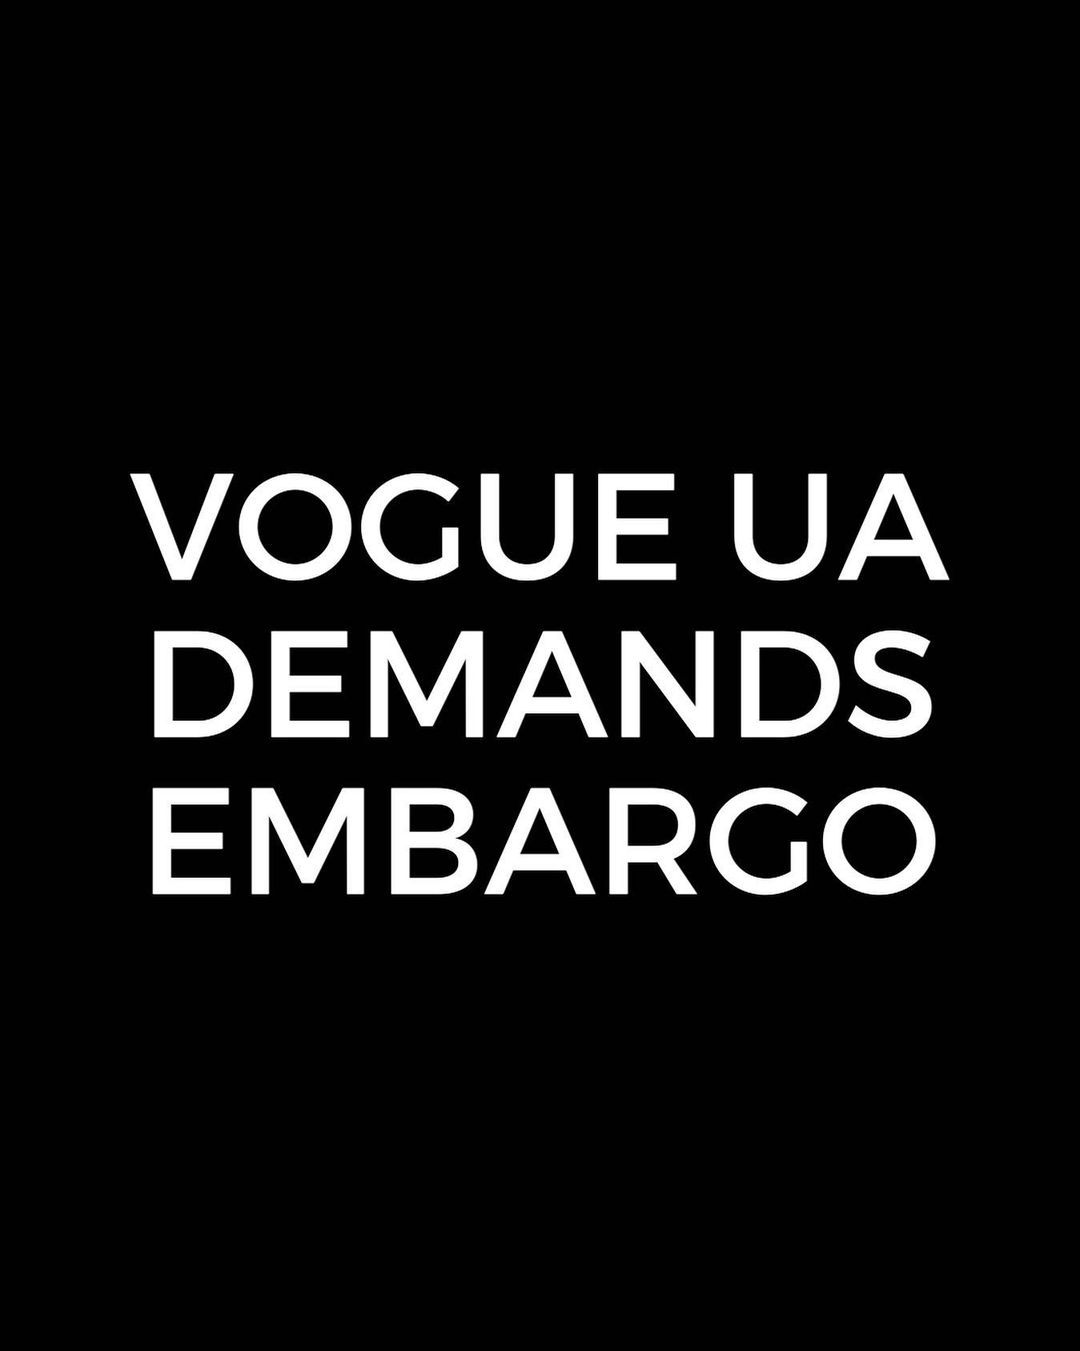 Ukrainian Vogue Petition